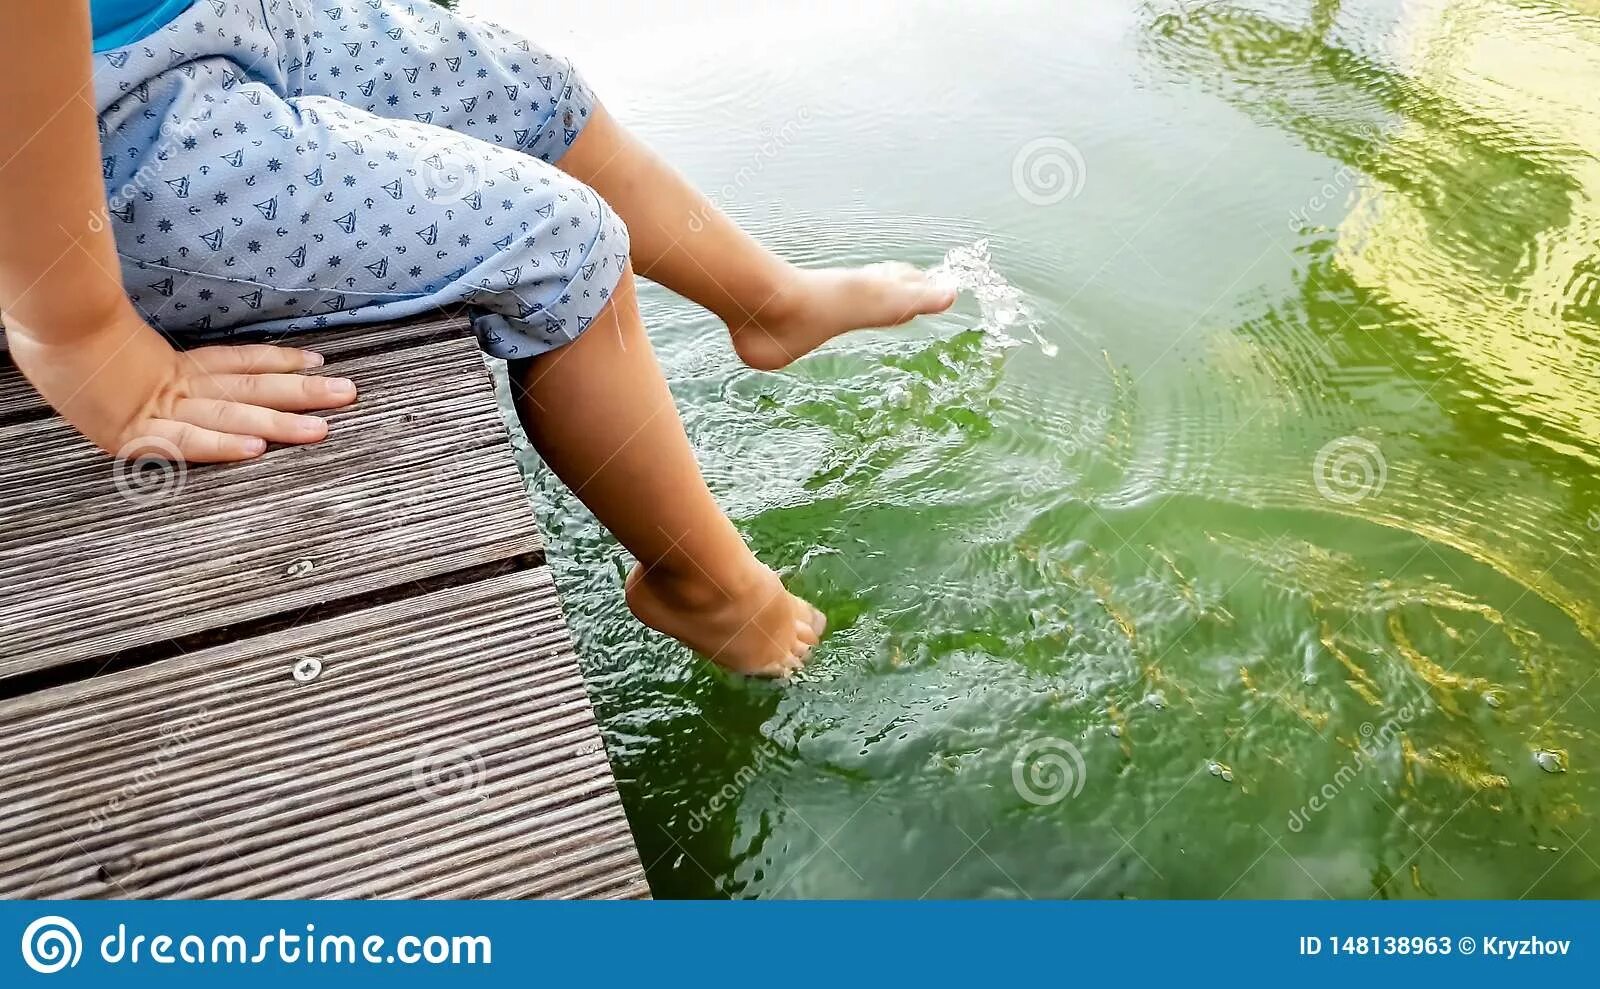 Дерево ногами в воде. Девочка плескается в воде ногами. Ноги плещут в воде. Ноги в воде дерево. Маленькая девочка плескает ногами в воде.